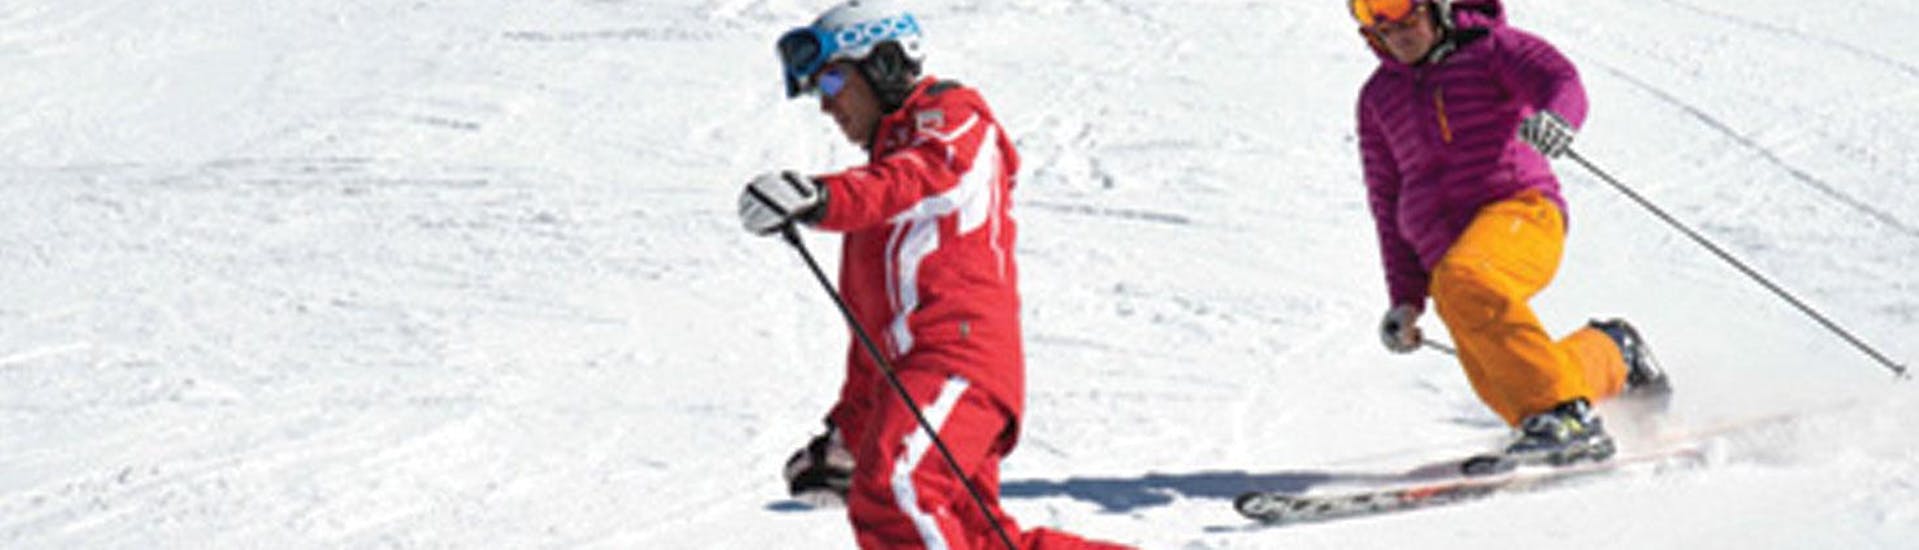 Privé Telemark skilessen voor alle niveaus.